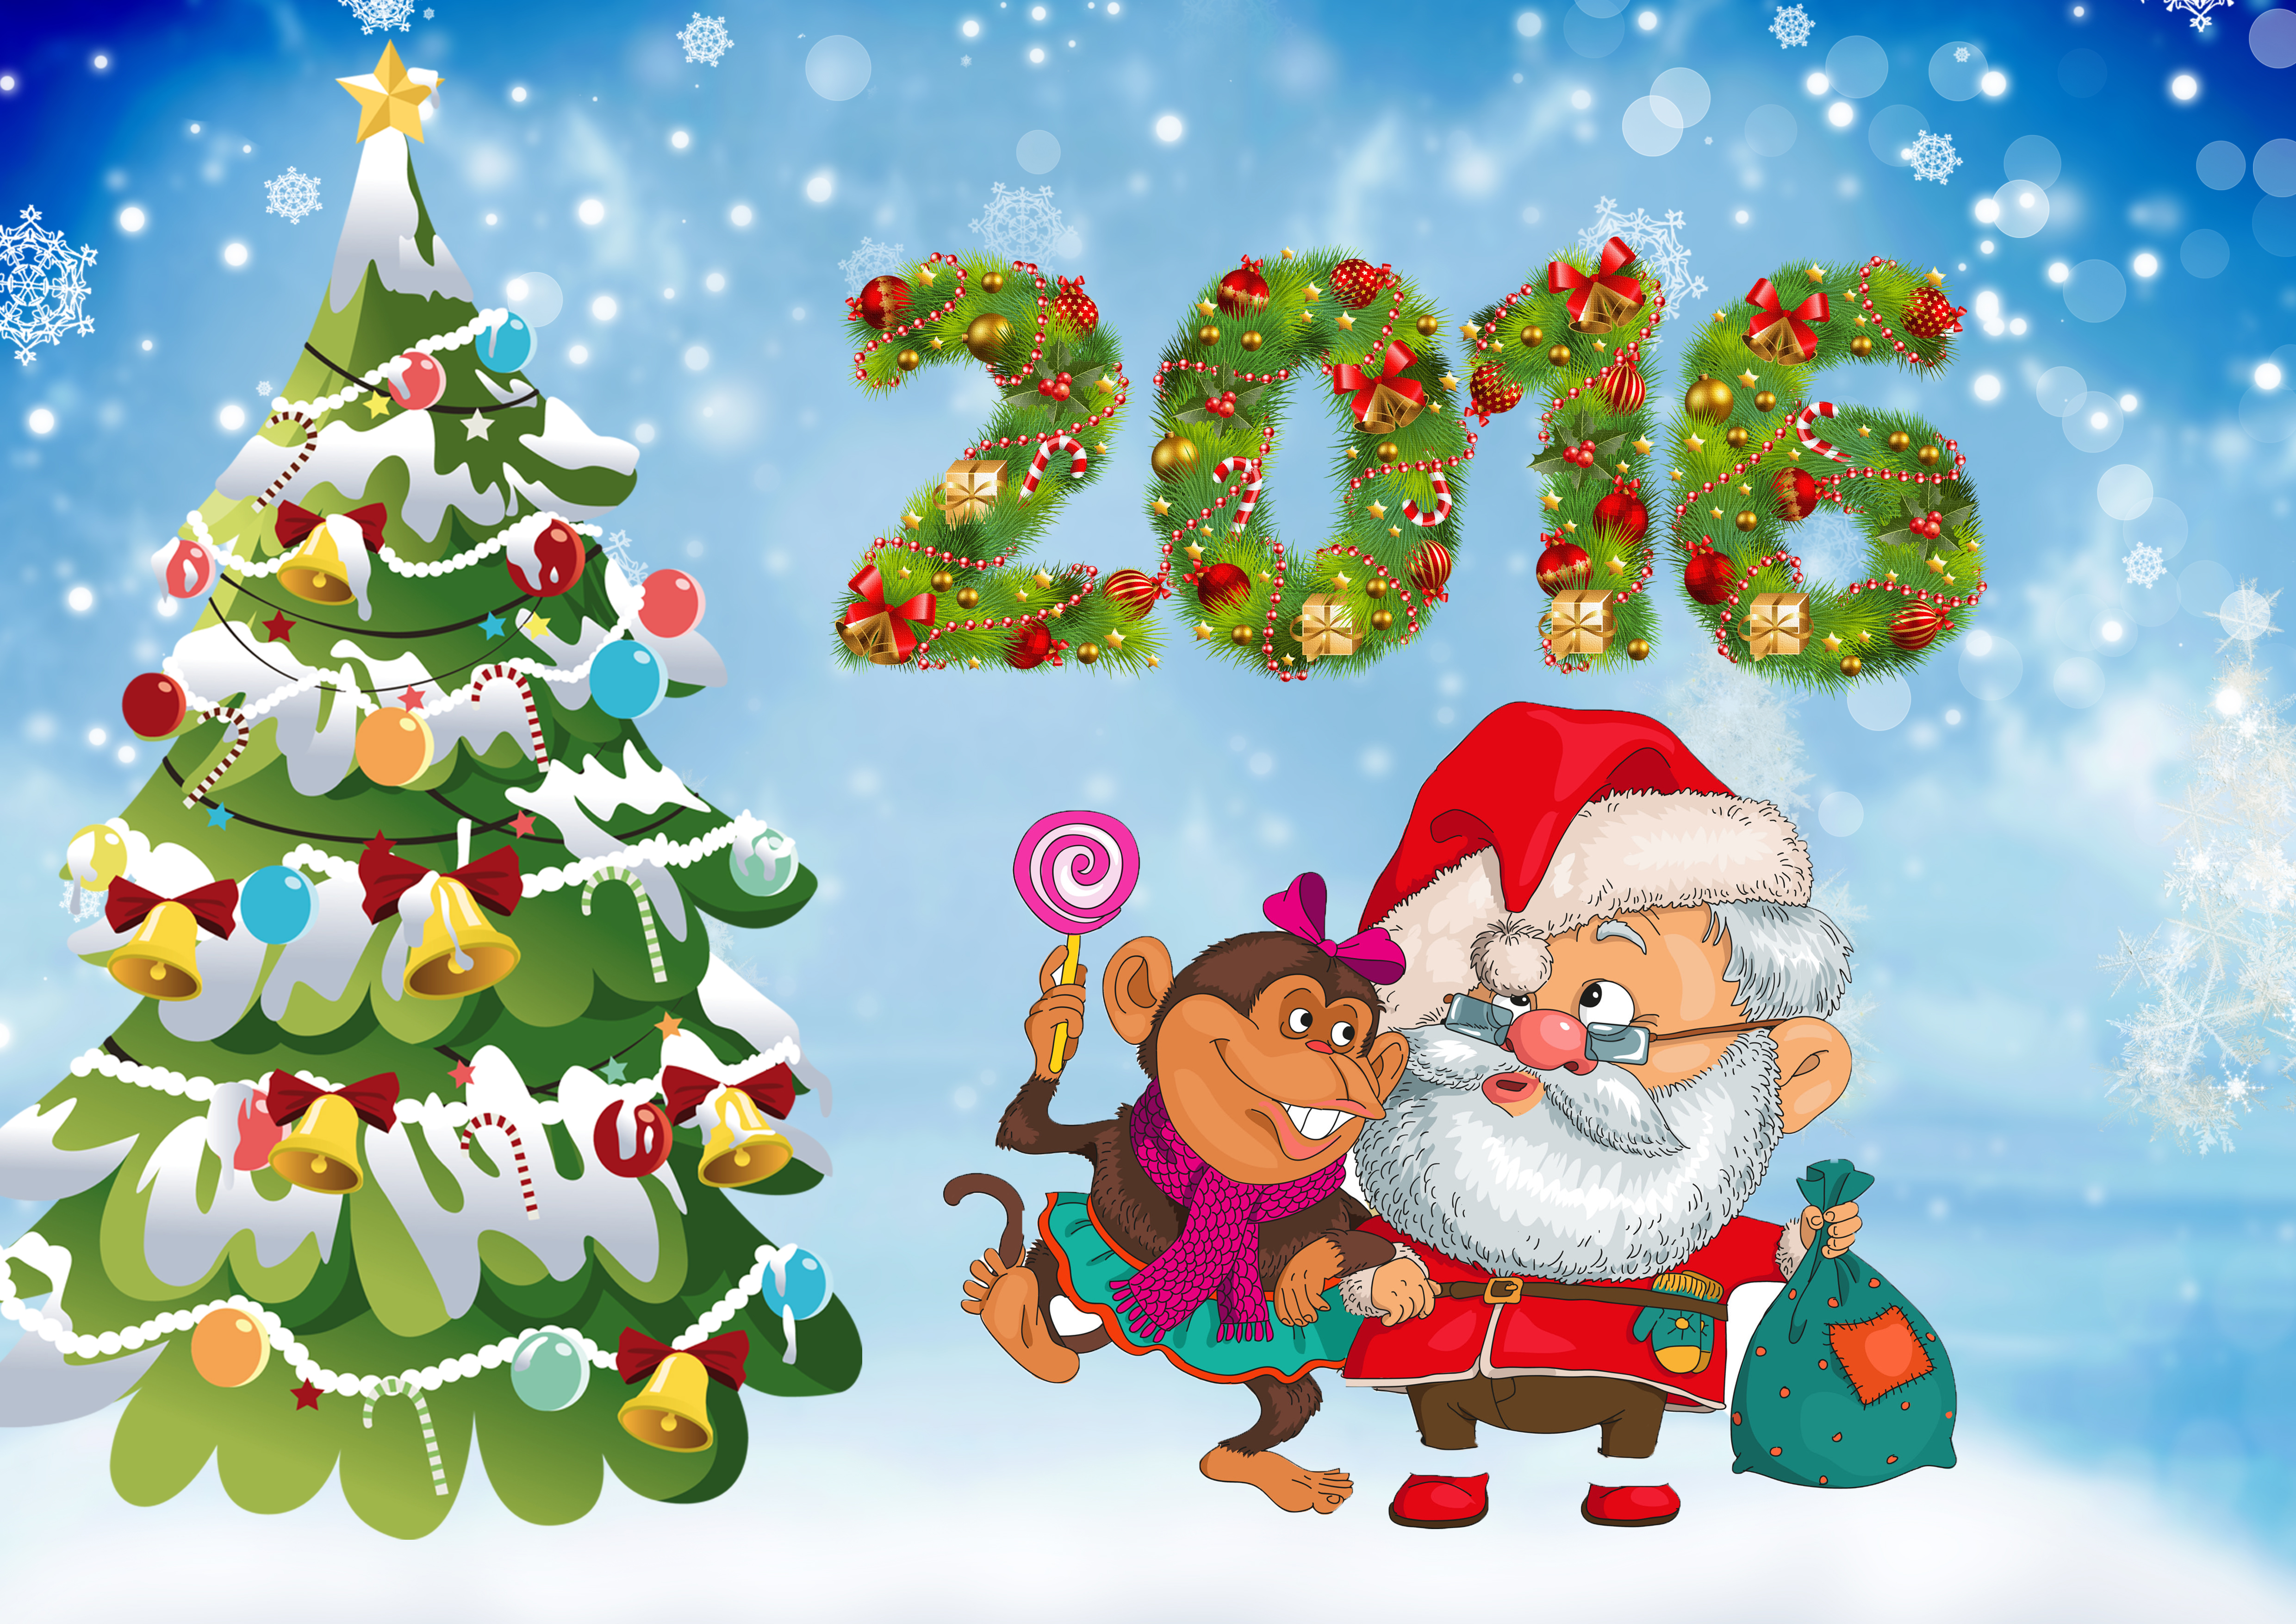 Информация о 2016 годе. С новым годом. Обезьяна новый год. Открытка к новому году 2016. Новогодние картинки 2016.